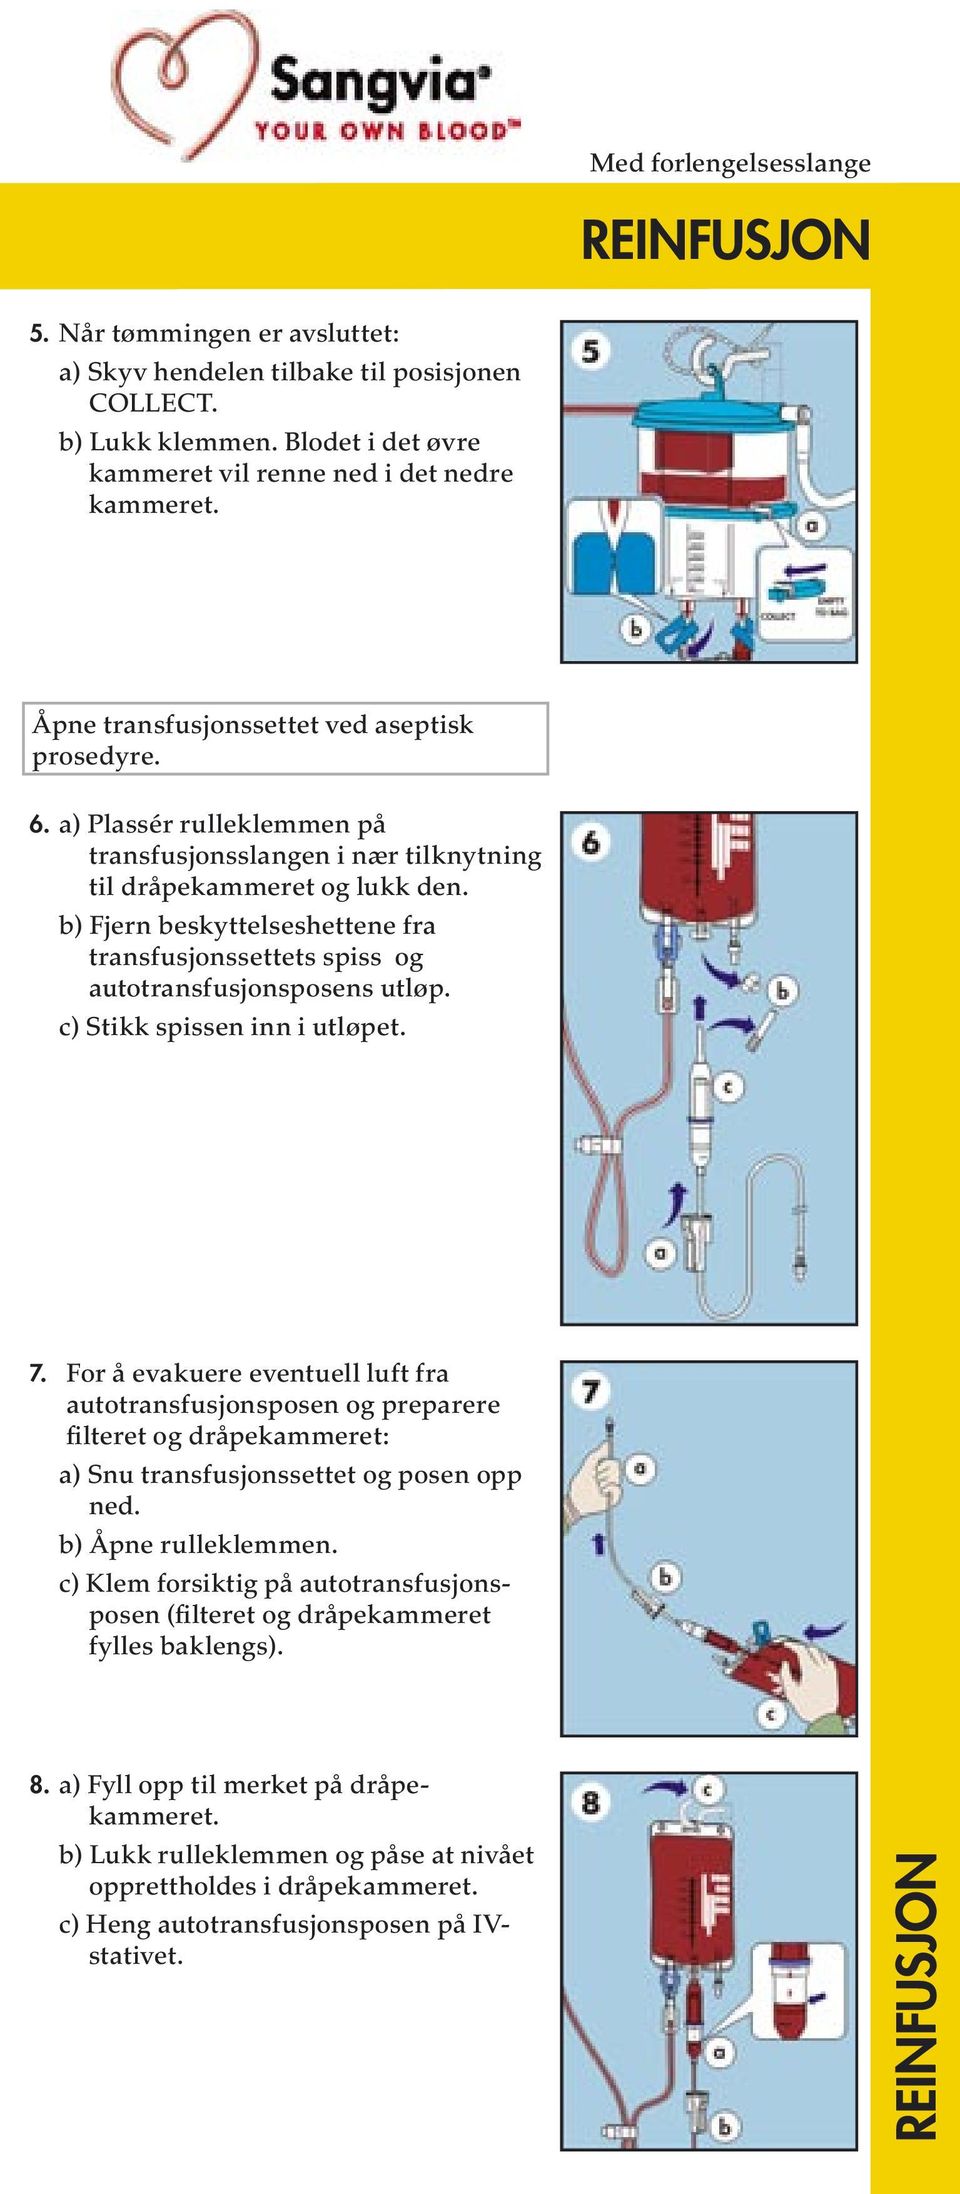 b) Fjern beskyttelseshettene fra transfusjonssettets spiss og autotransfusjonsposens utløp. c) Stikk spissen inn i utløpet. 7.